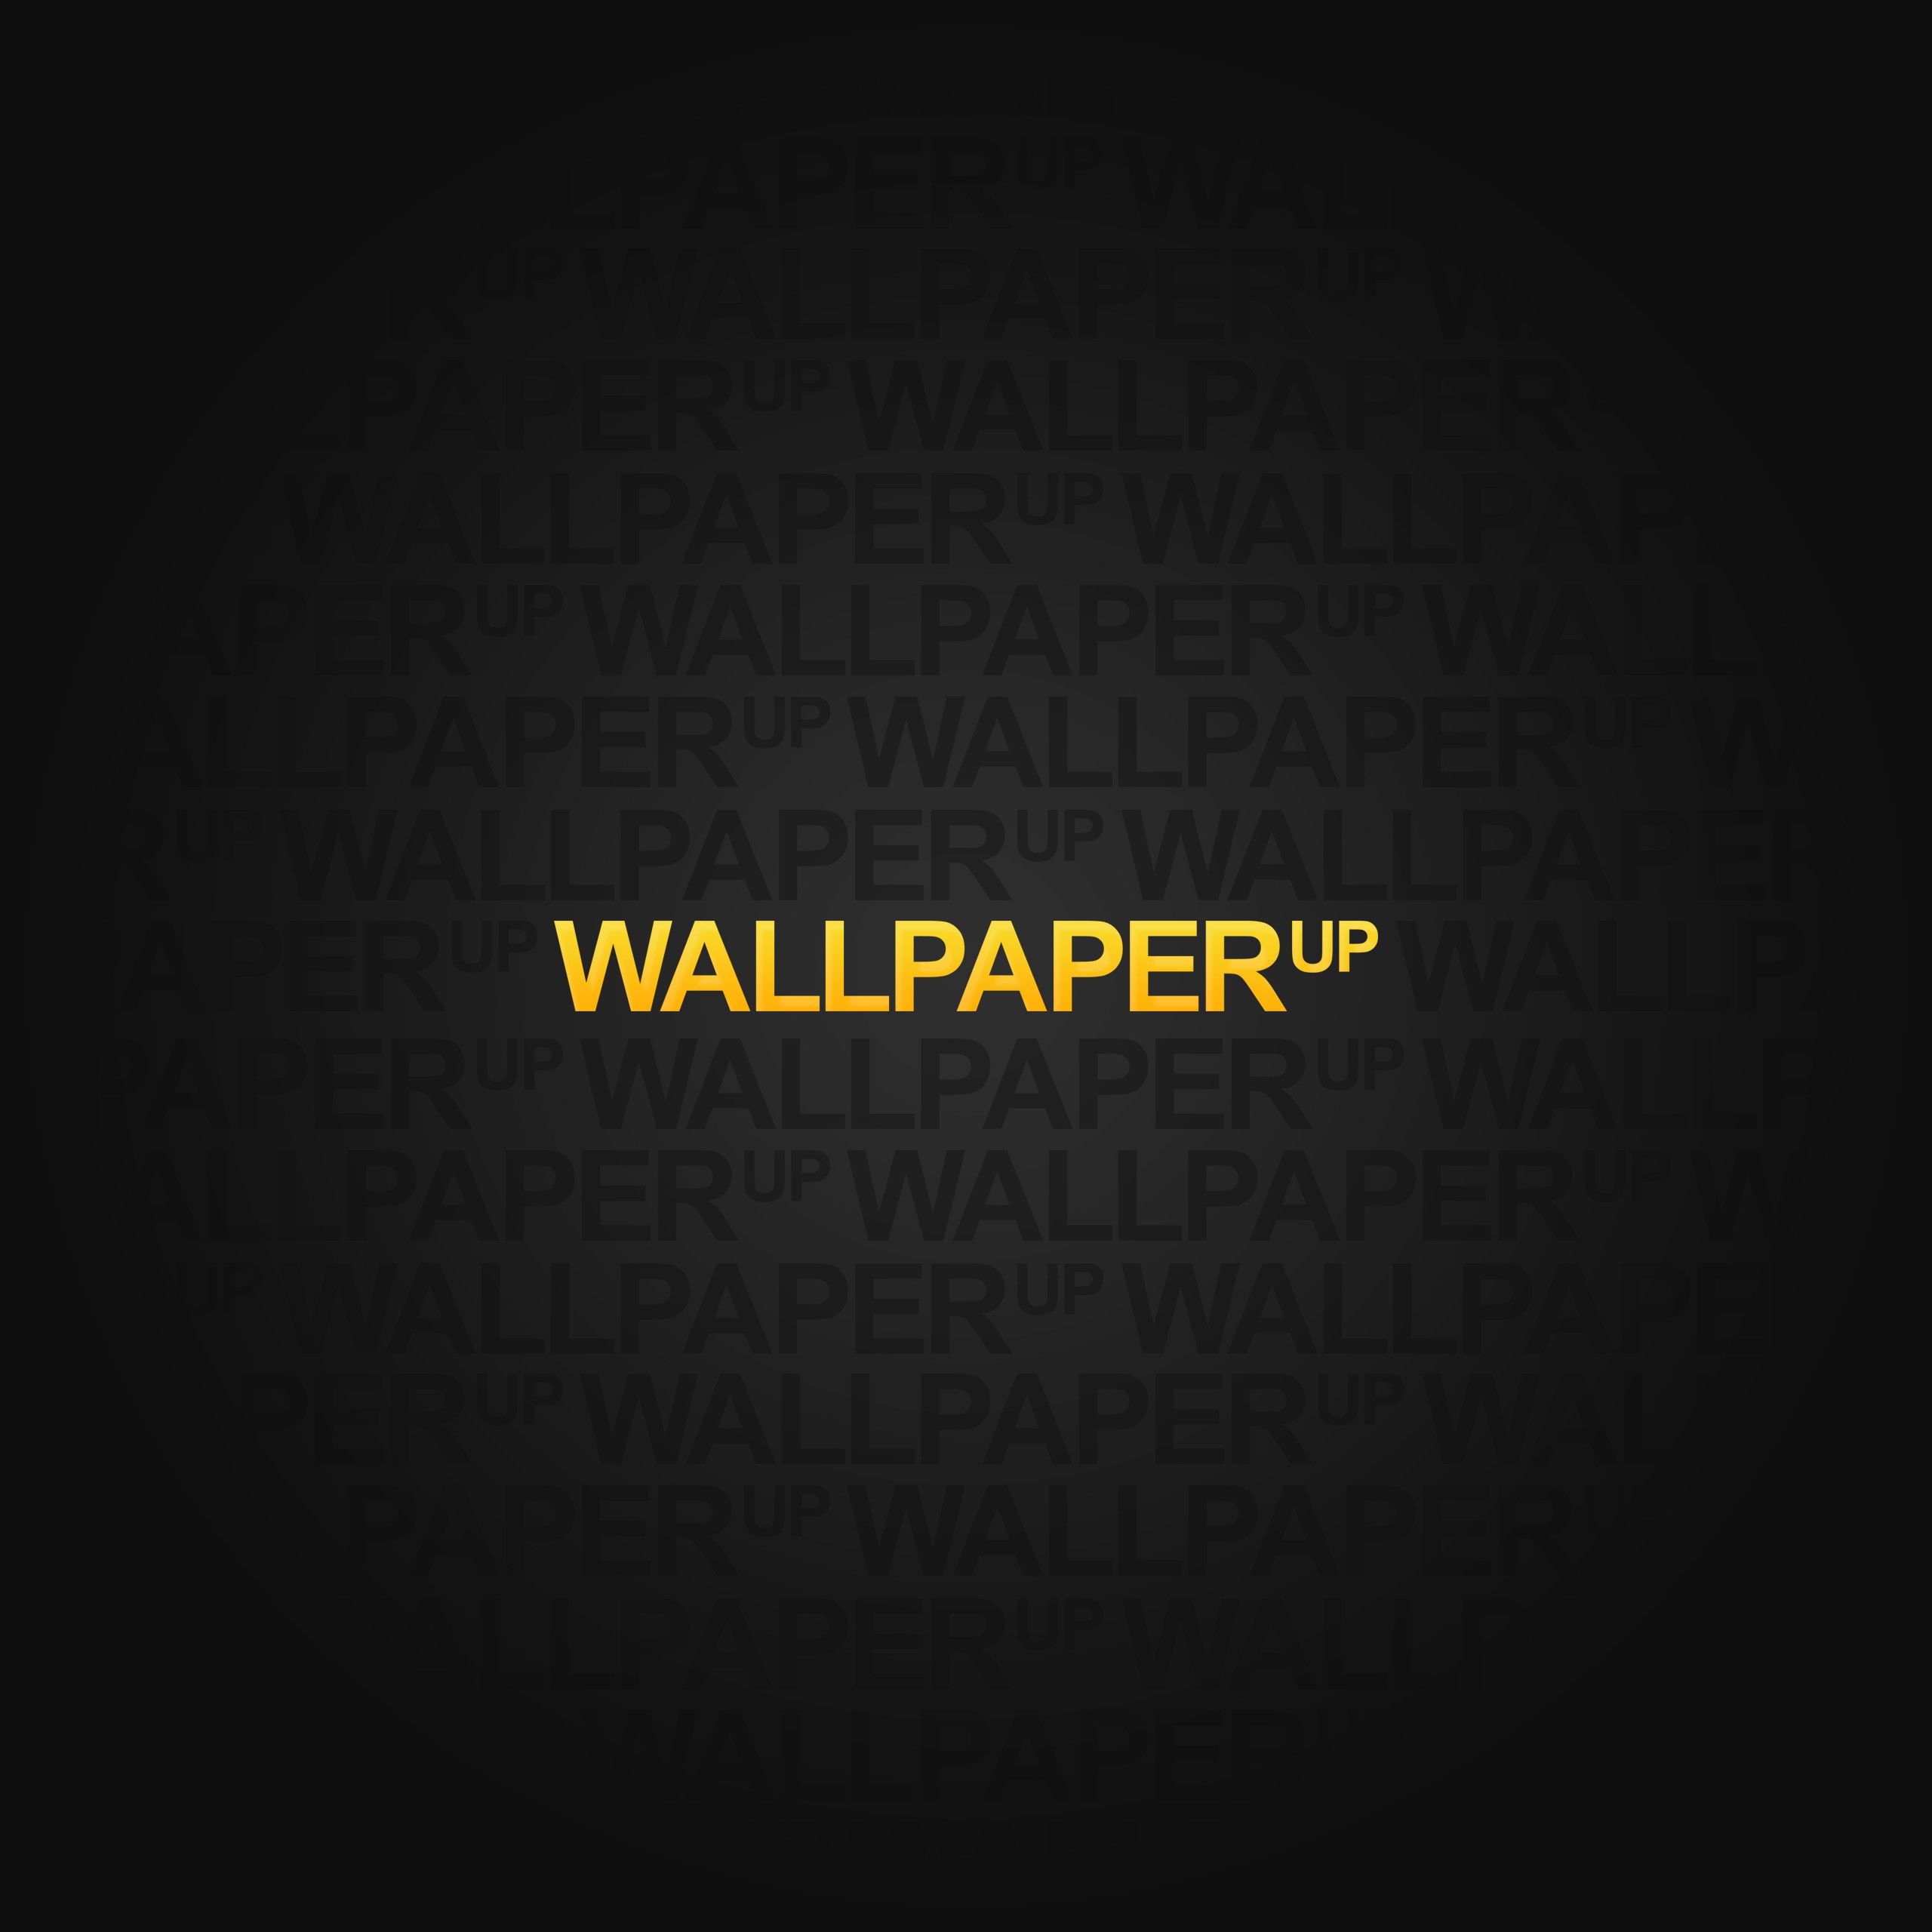 wallpaperup, Wallpaper Wallpaper